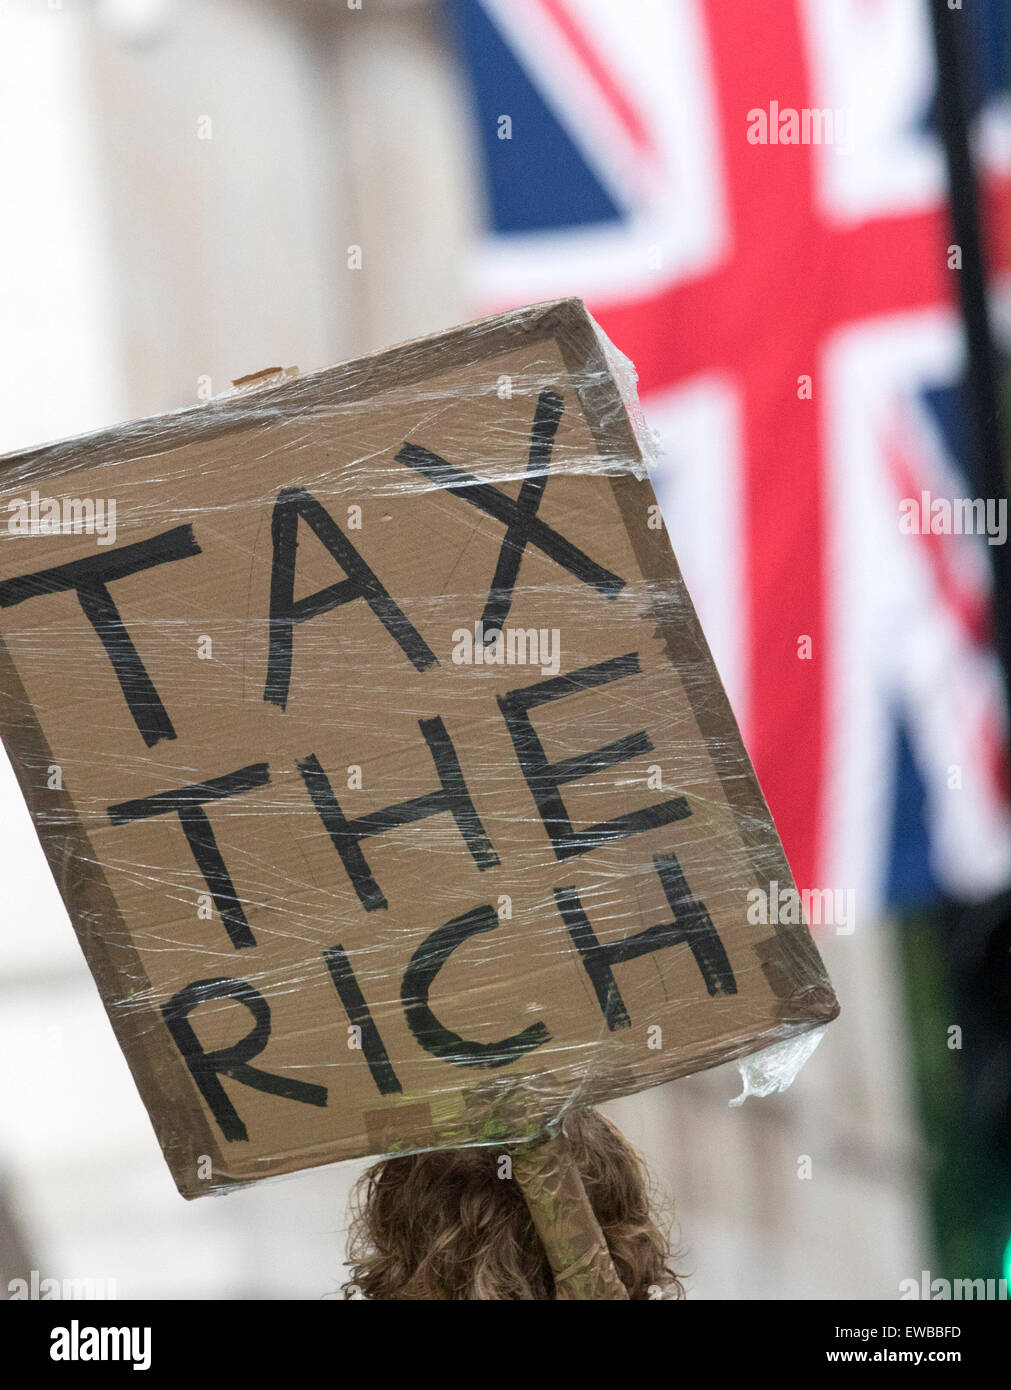 Anti austerity No Cuts protest march demo London Stock Photo